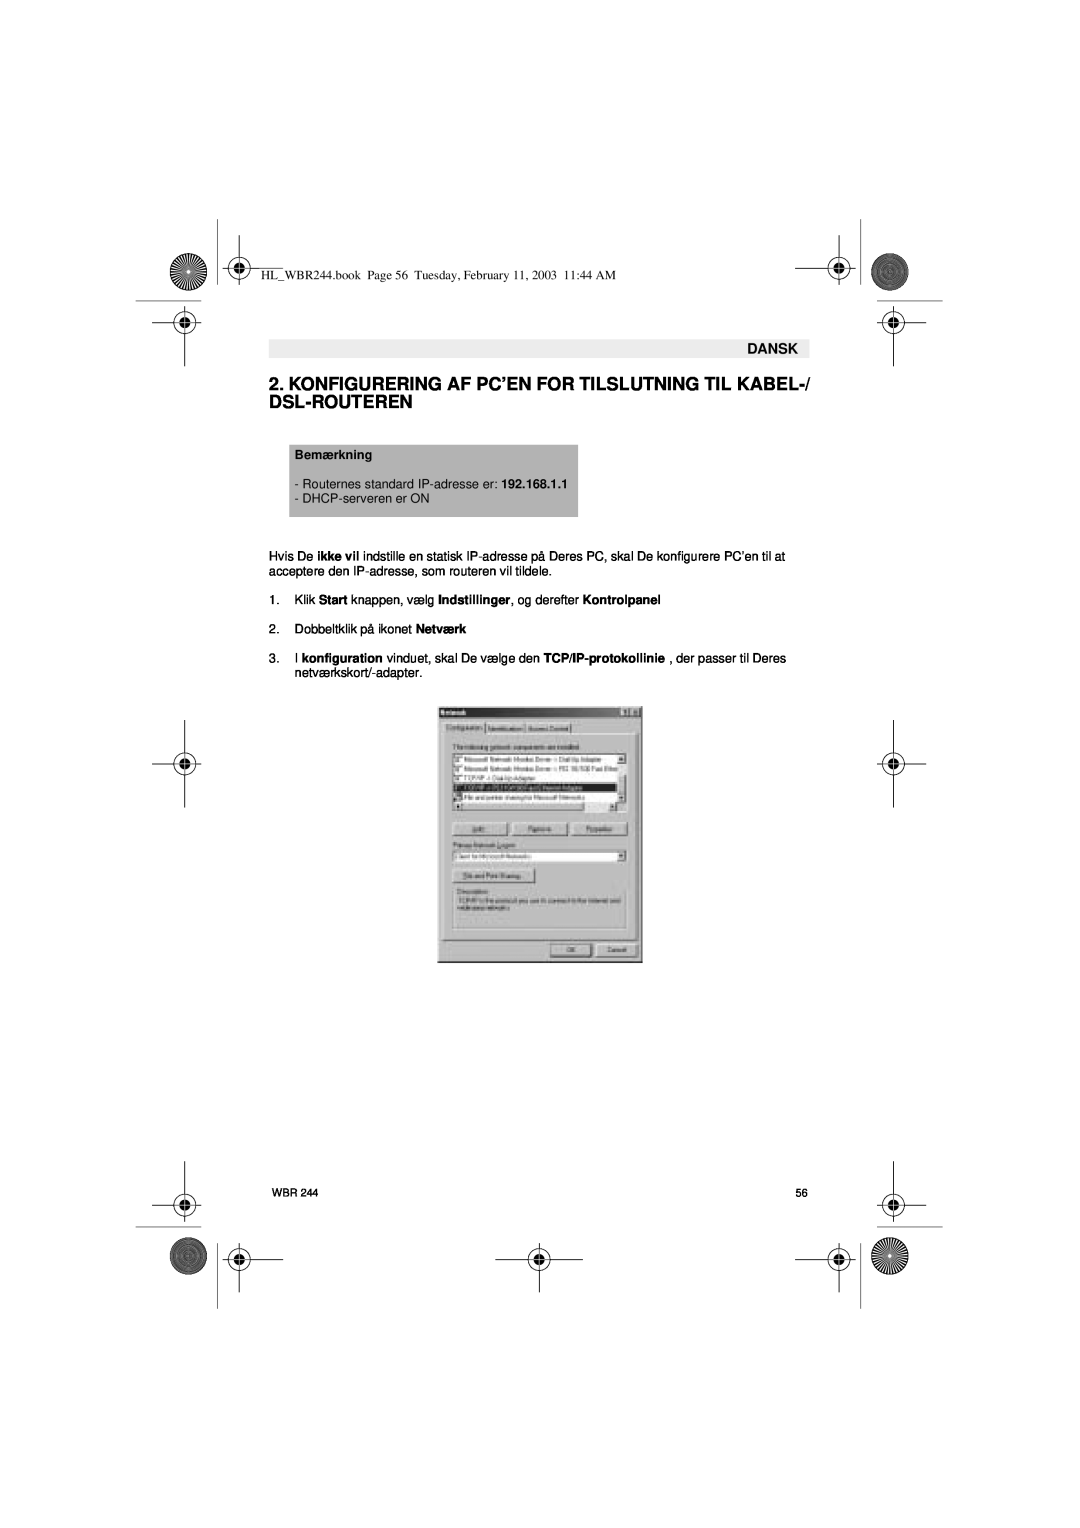 Topcom WBR 244 manual Konfigurering Af Pc’En For Tilslutning Til Kabel-/ Dsl-Routeren, Bemærkning, Dansk 